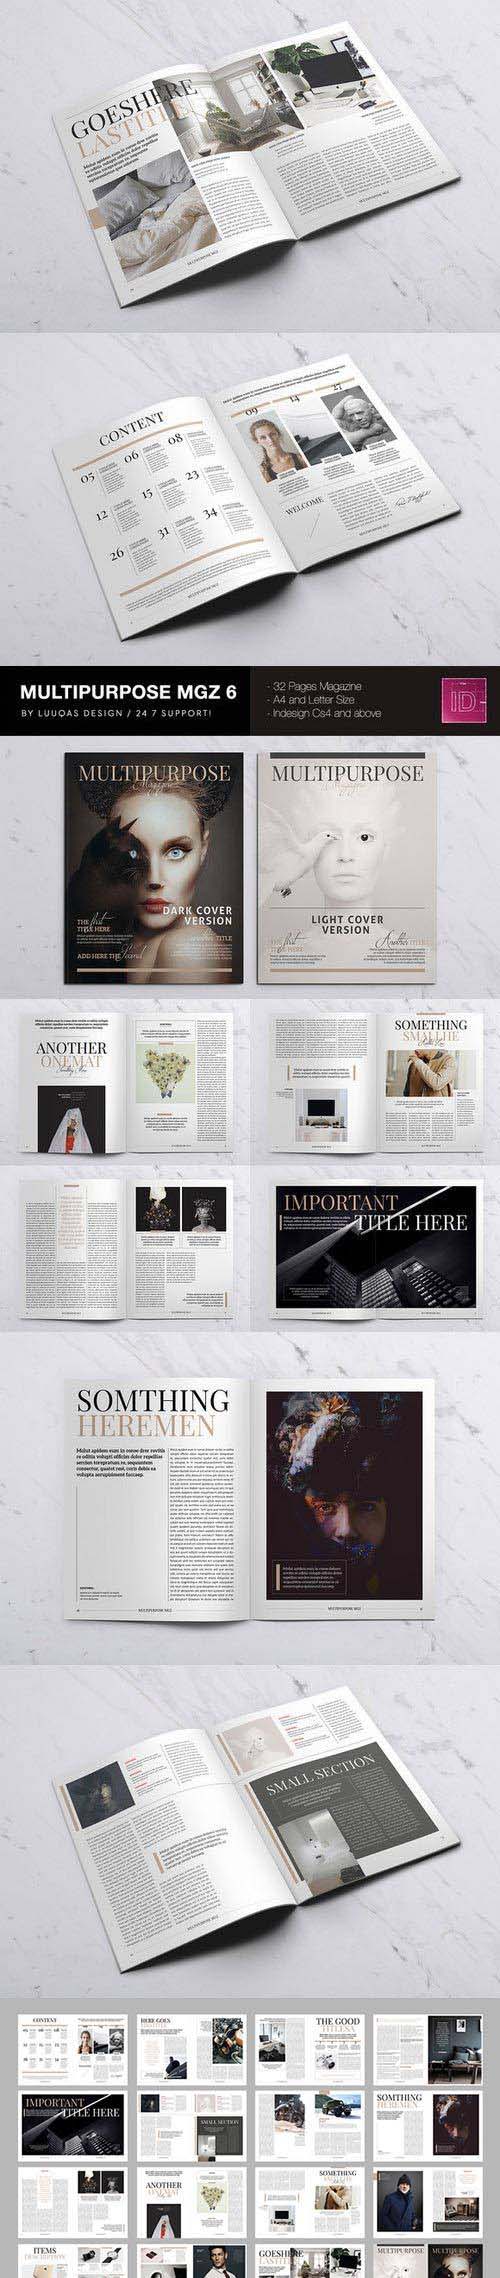 Multipurpose Magazine 6 530952